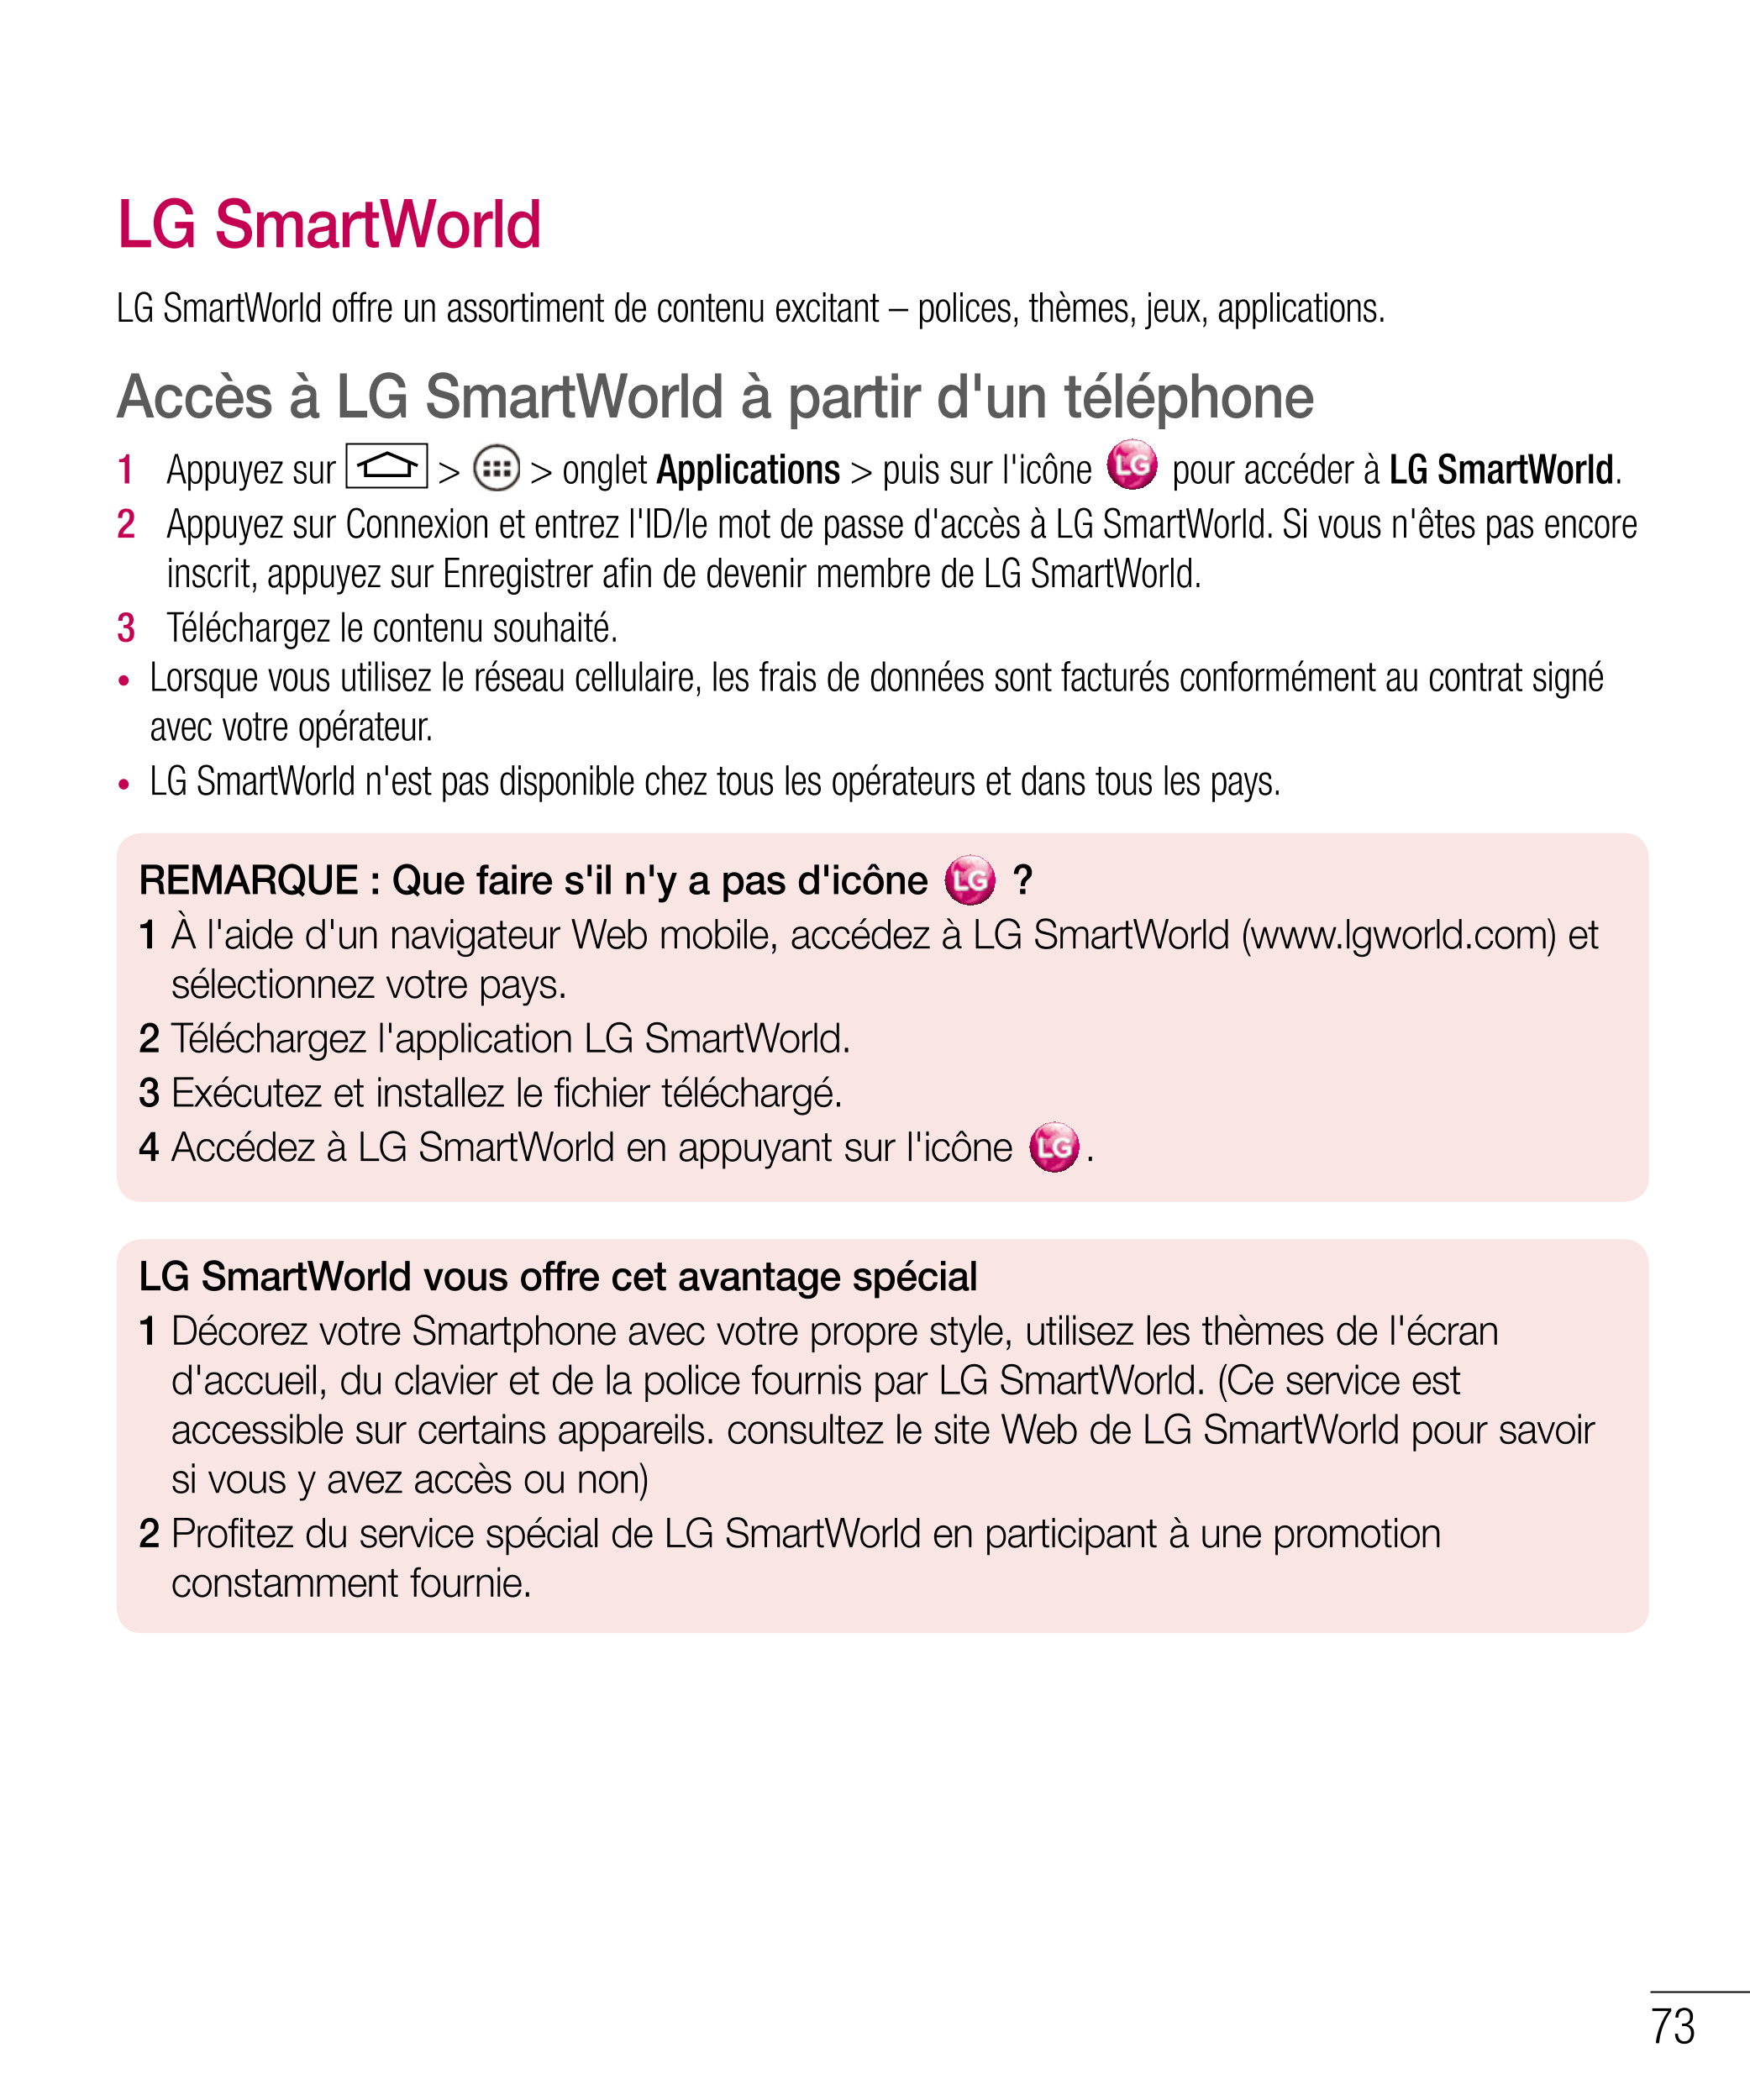 LG SmartWorld
LG SmartWorld offre un assortiment de contenu excitant – polices, thèmes, jeux, applications.
Accès à LG SmartWorl